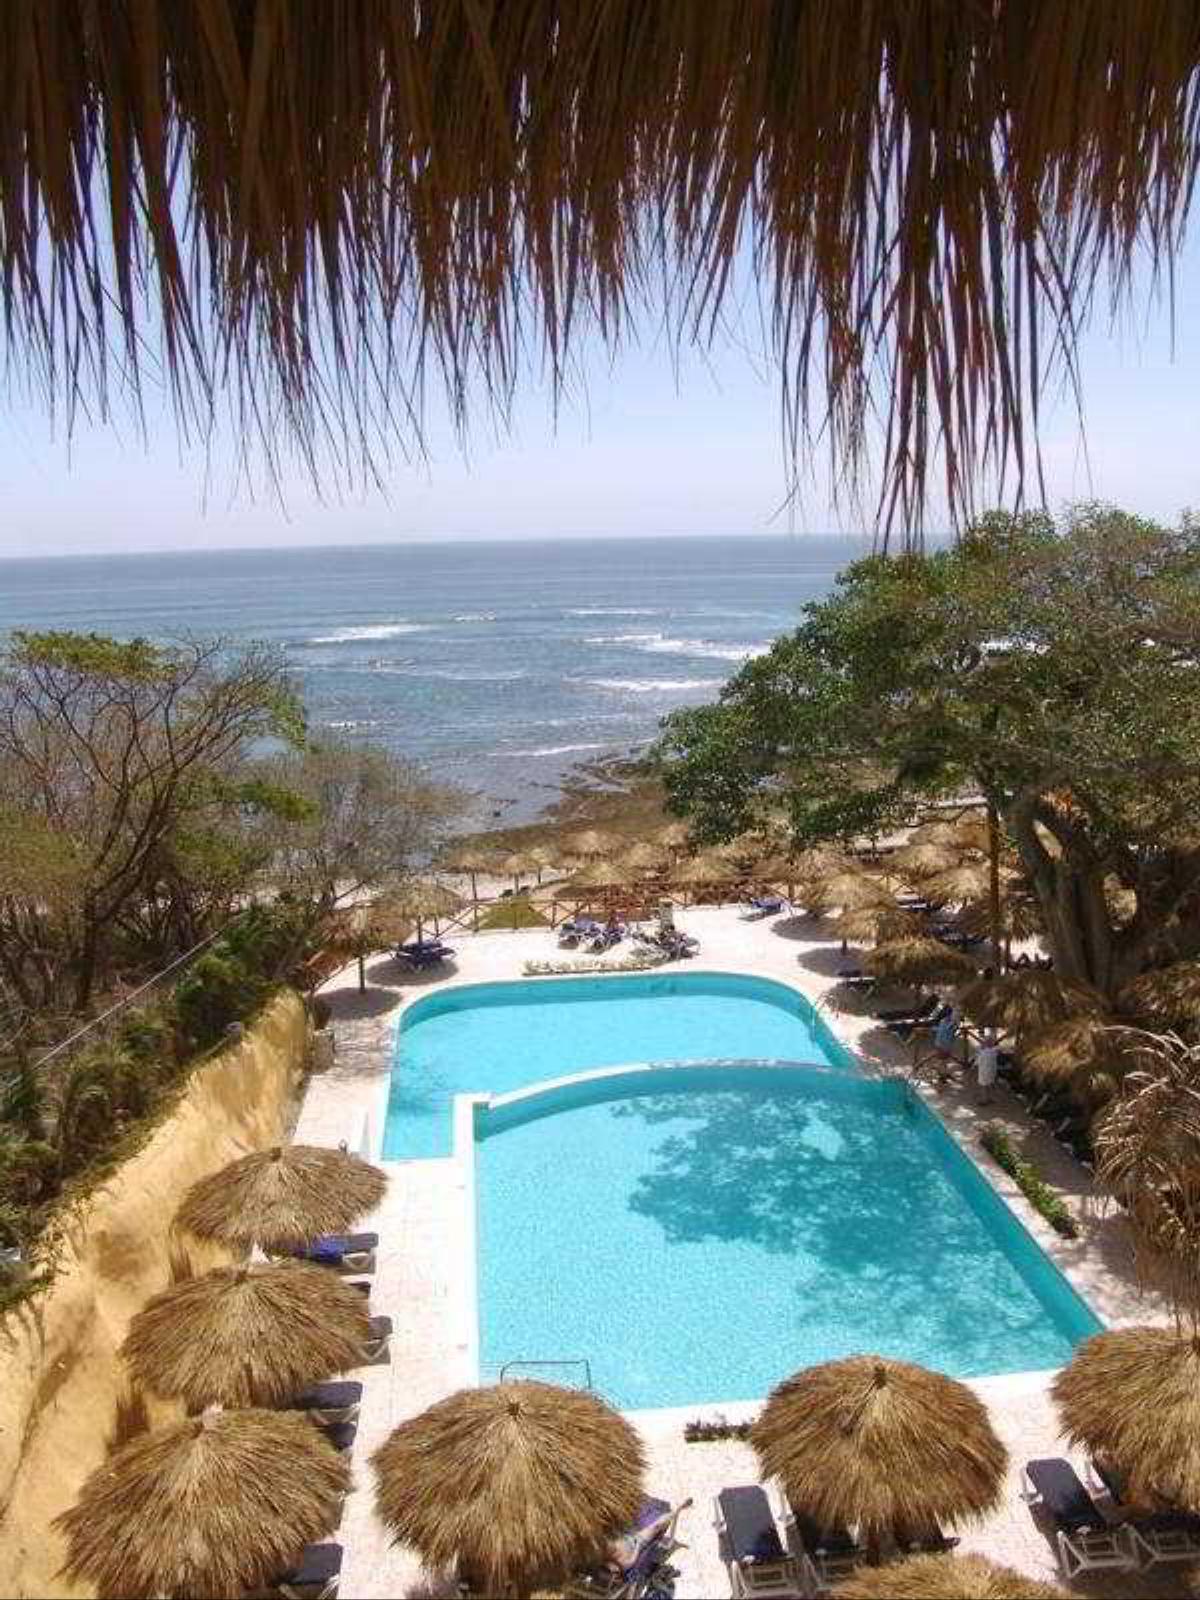 The Royal Suites Punta Mita By Palladium Hotel Puerto Vallarta Mexico